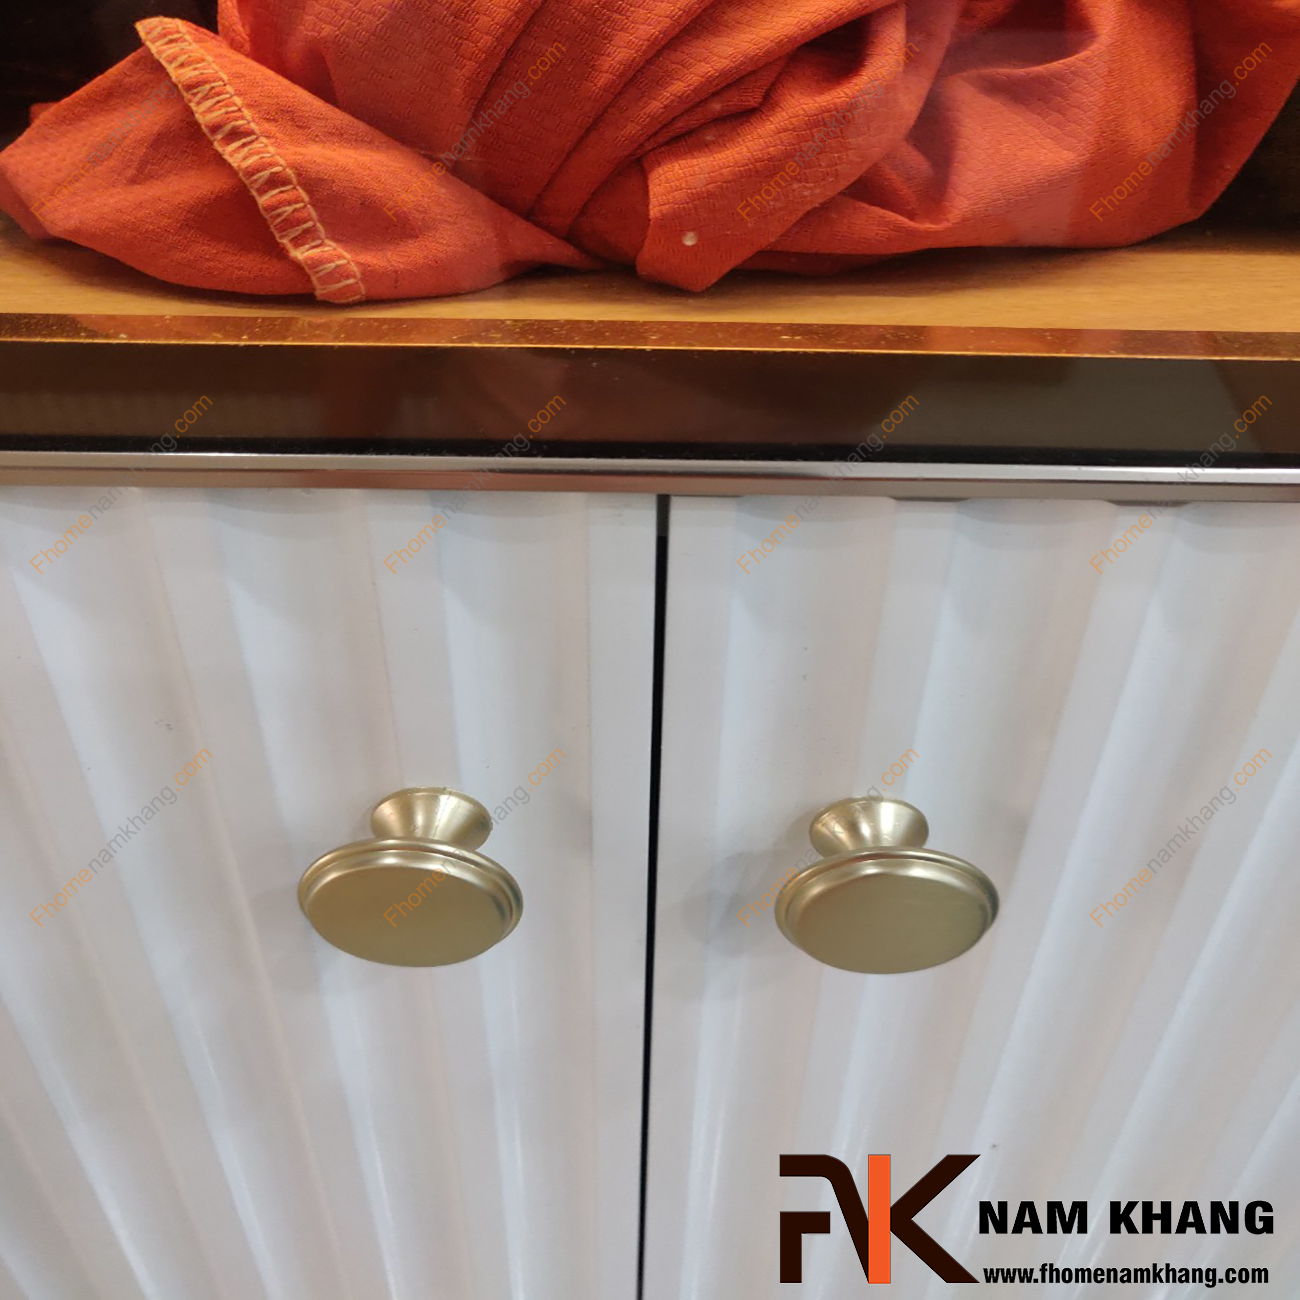 Sản phẩm Núm cửa tủ dạng tròn màu vàng mờ NK415-VM phong cách đơn giản, tinh tế và rất cao cấp, có thể sử dụng trên nhiều phong cách tủ kệ khác nhau.